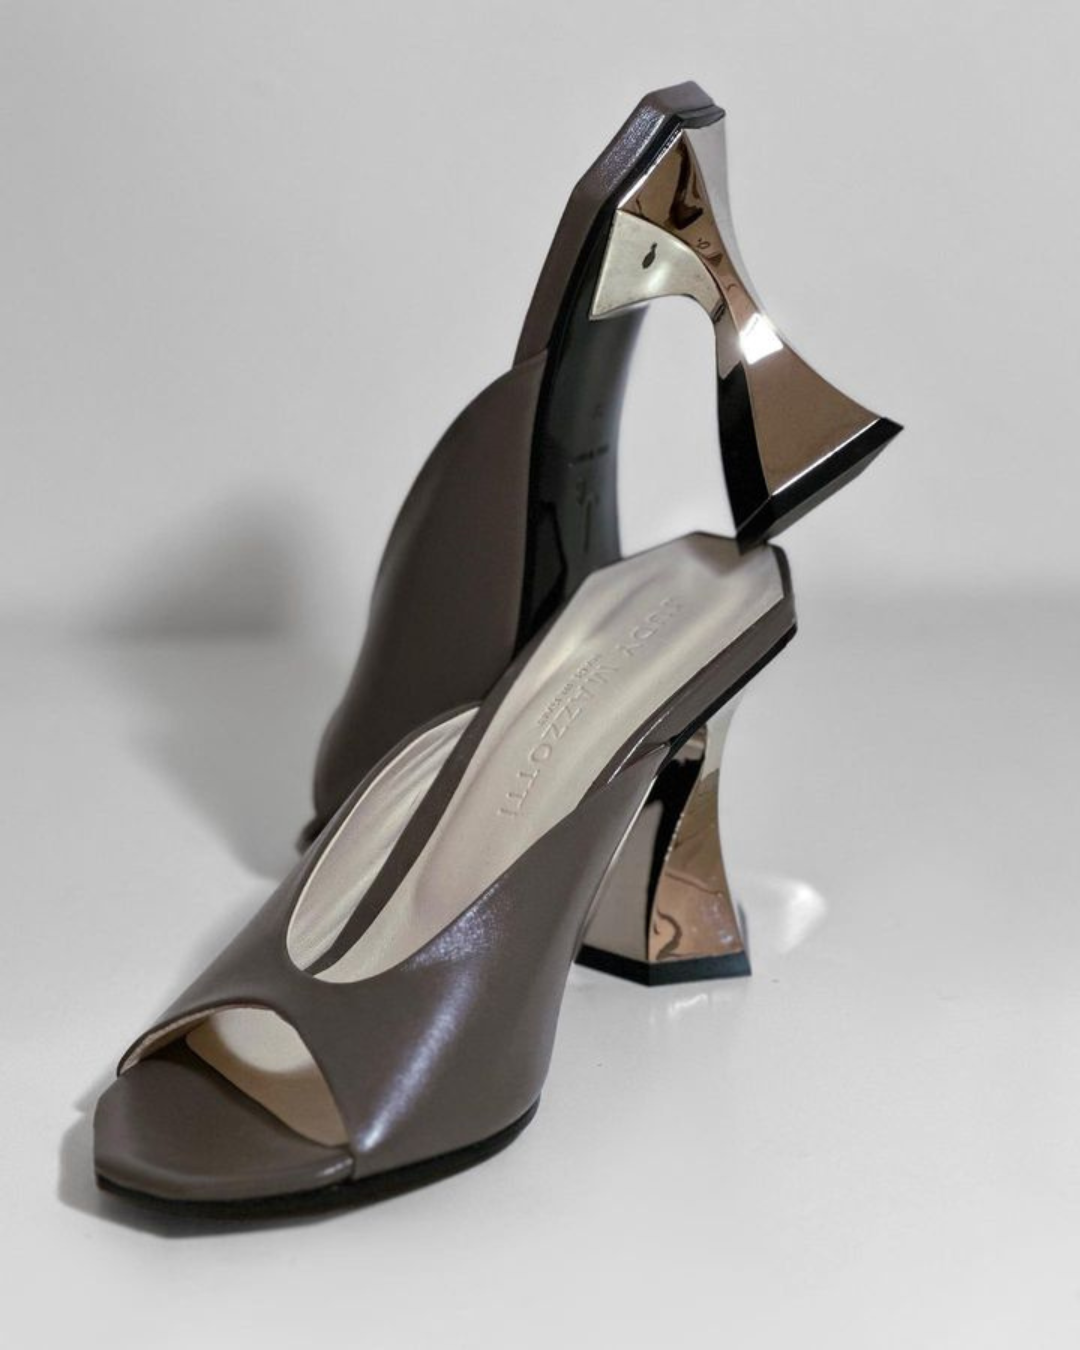 Judy Mazzotti, the femininity of Italian shoes at Who's Next